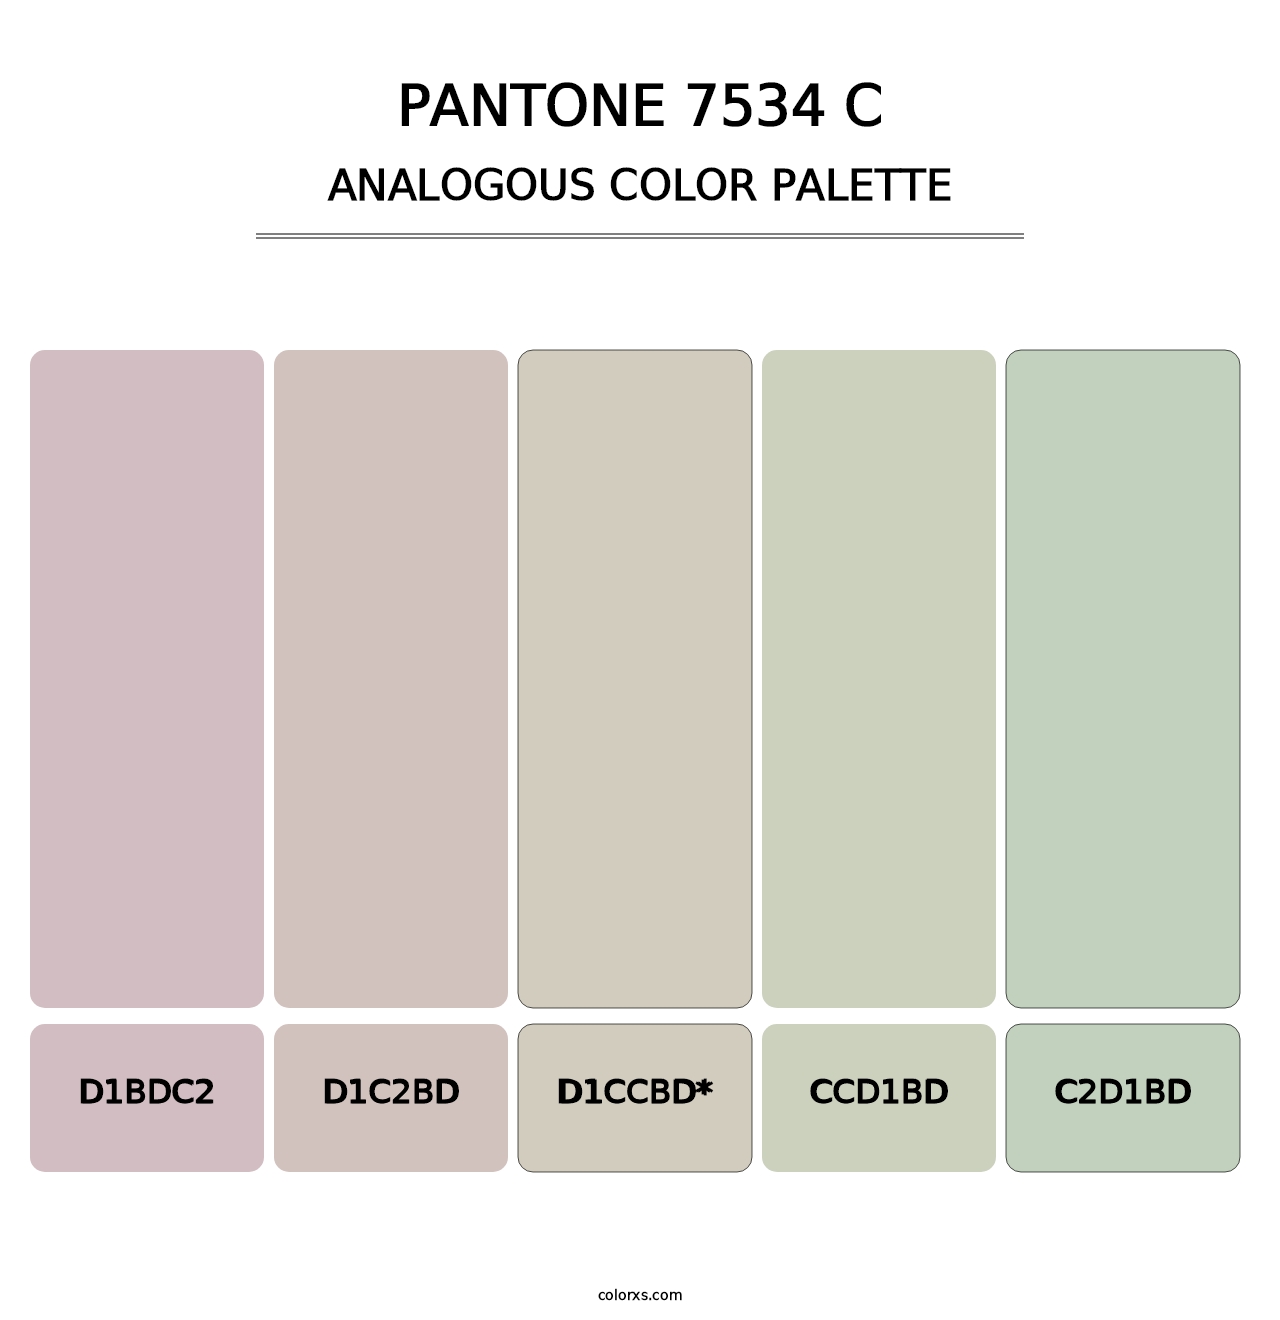 PANTONE 7534 C - Analogous Color Palette